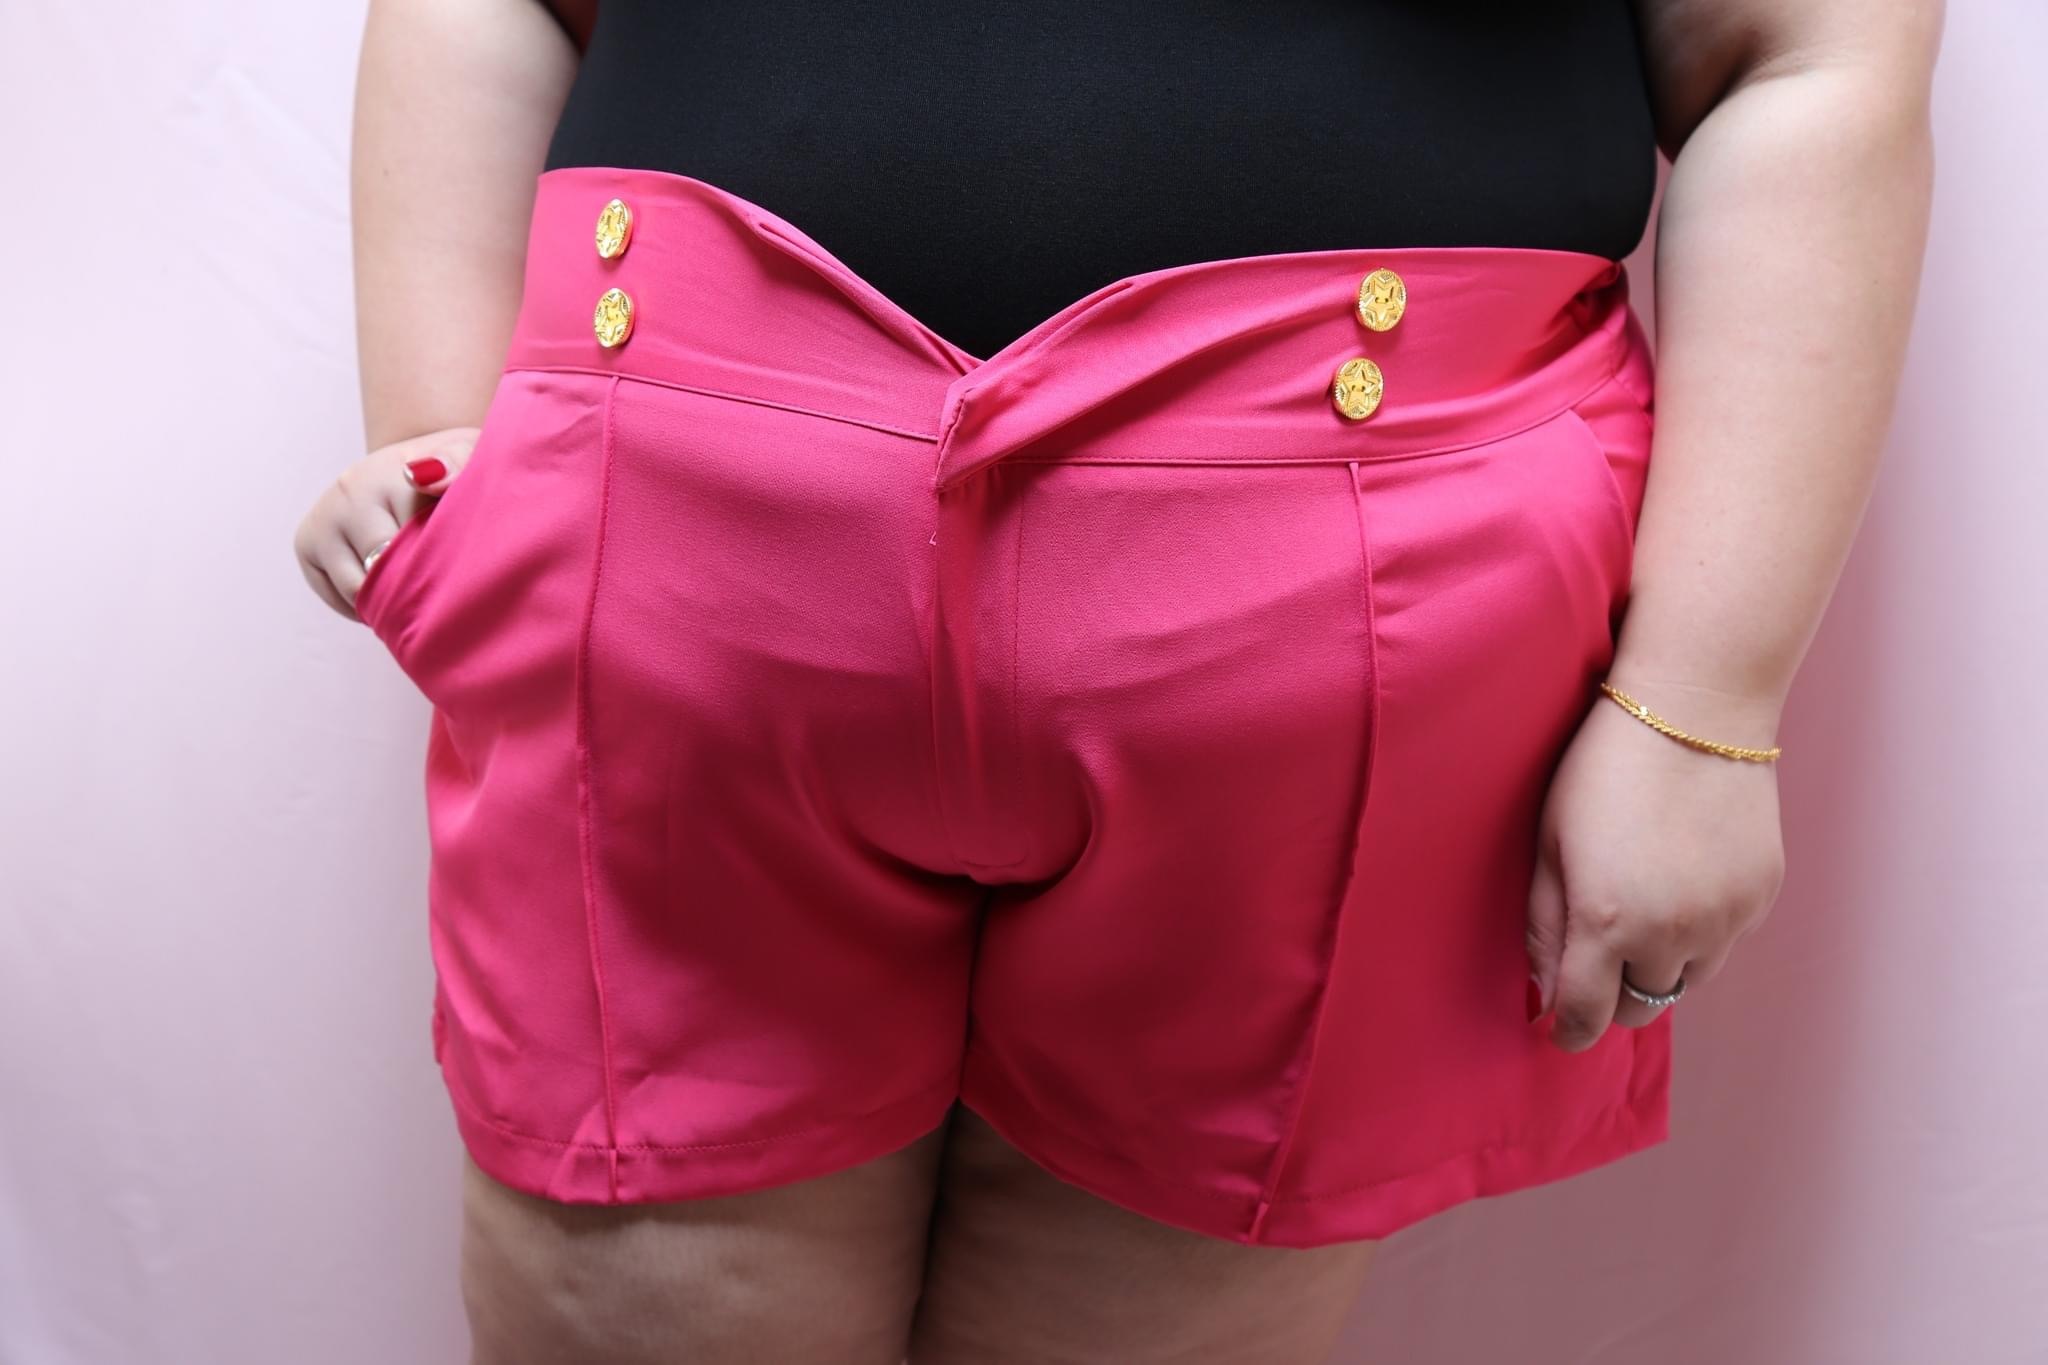 Star Golden Button Shorts [Size 2, UK18-20] | 3 Colours |Plus Size Shorts